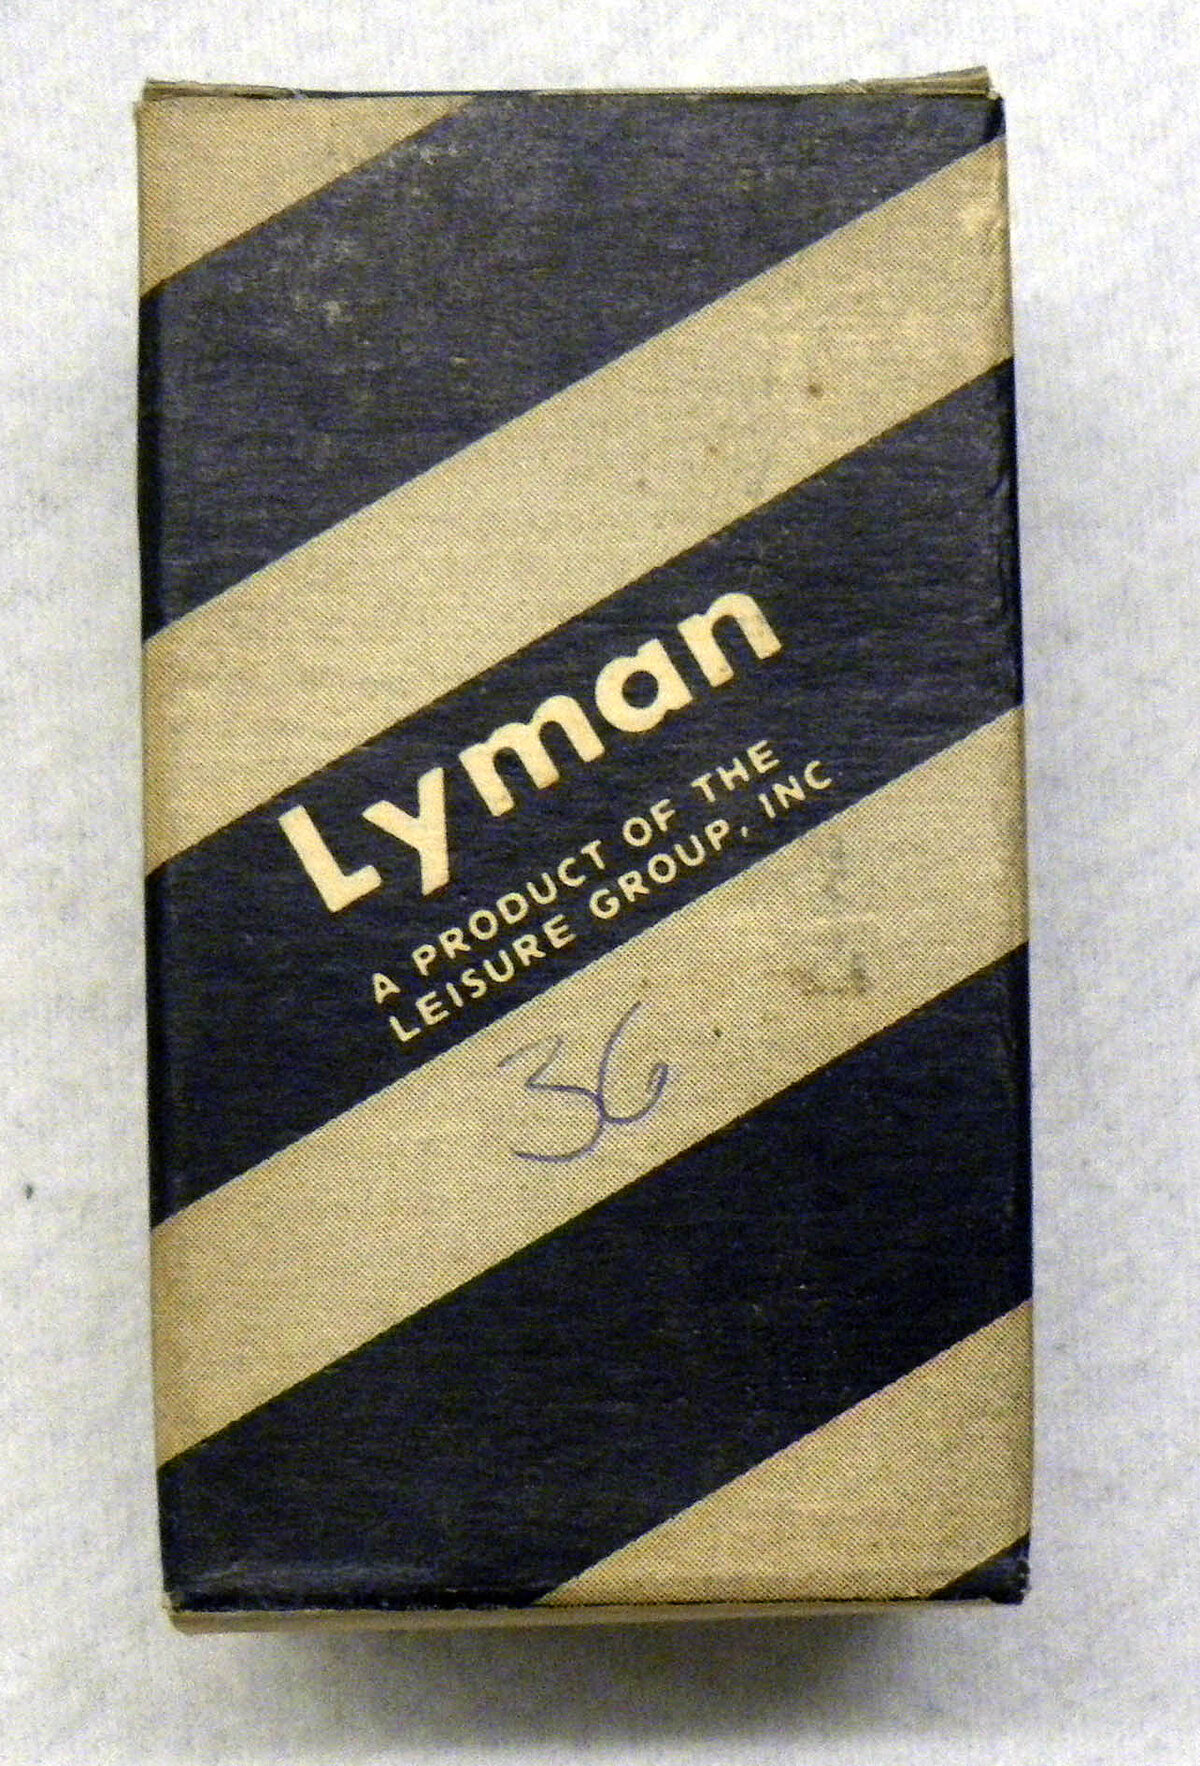 Lyman Gas Checks .243